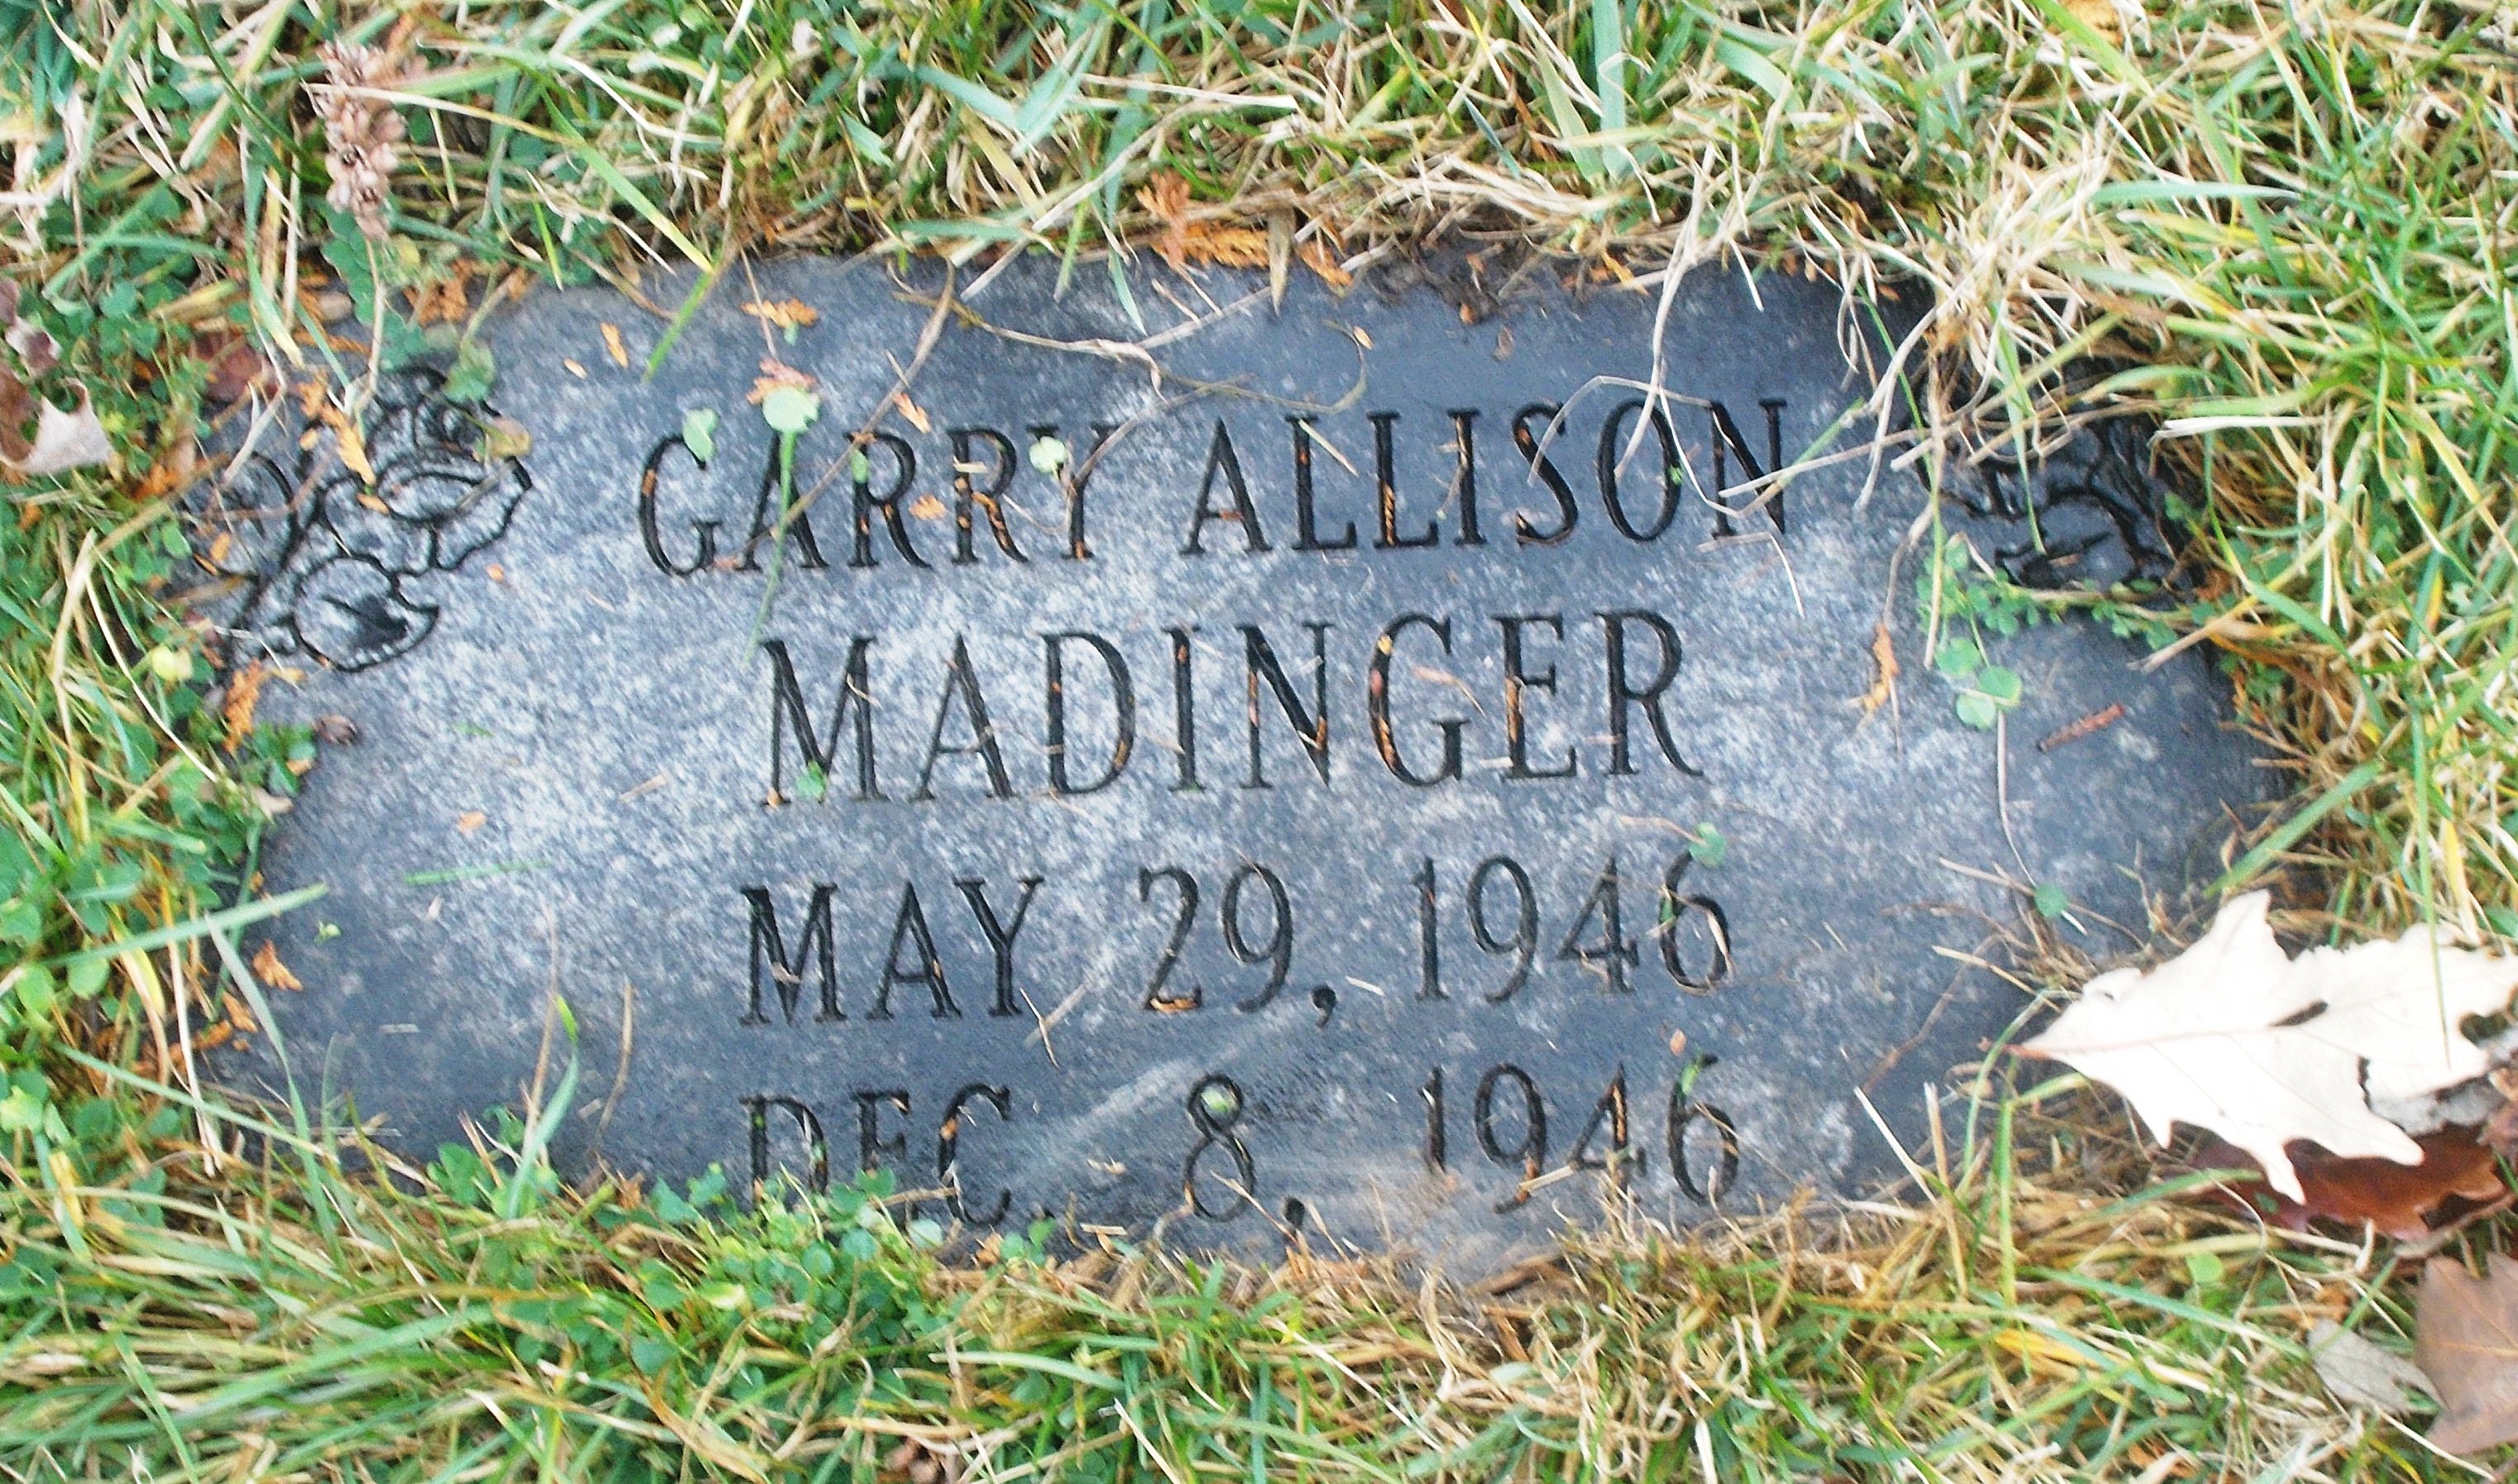 Garry Allison Madinger